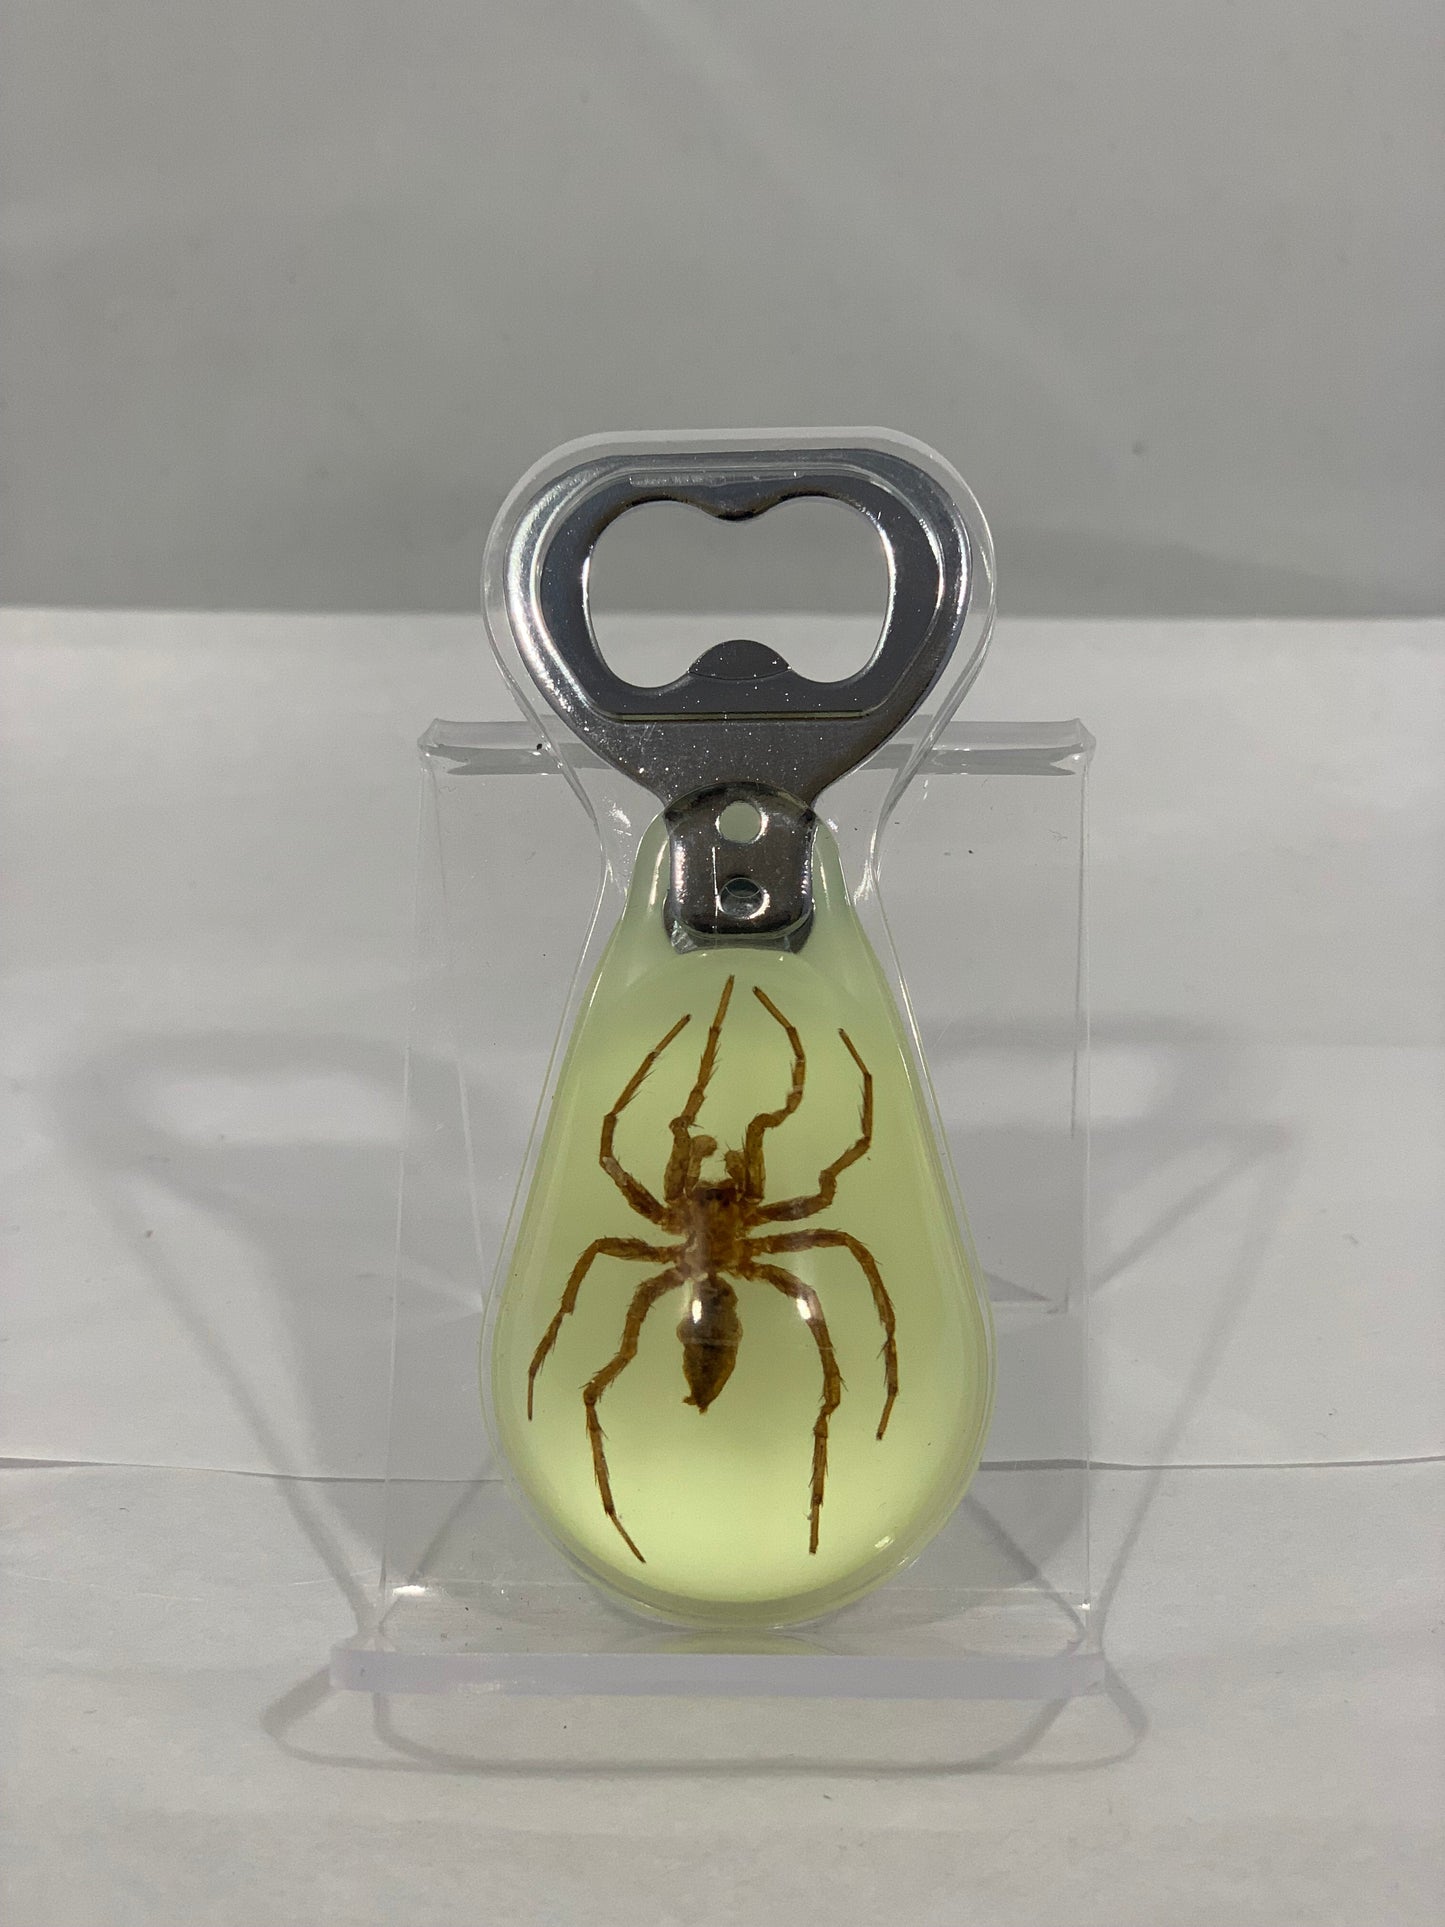 Spider Bottle Opener